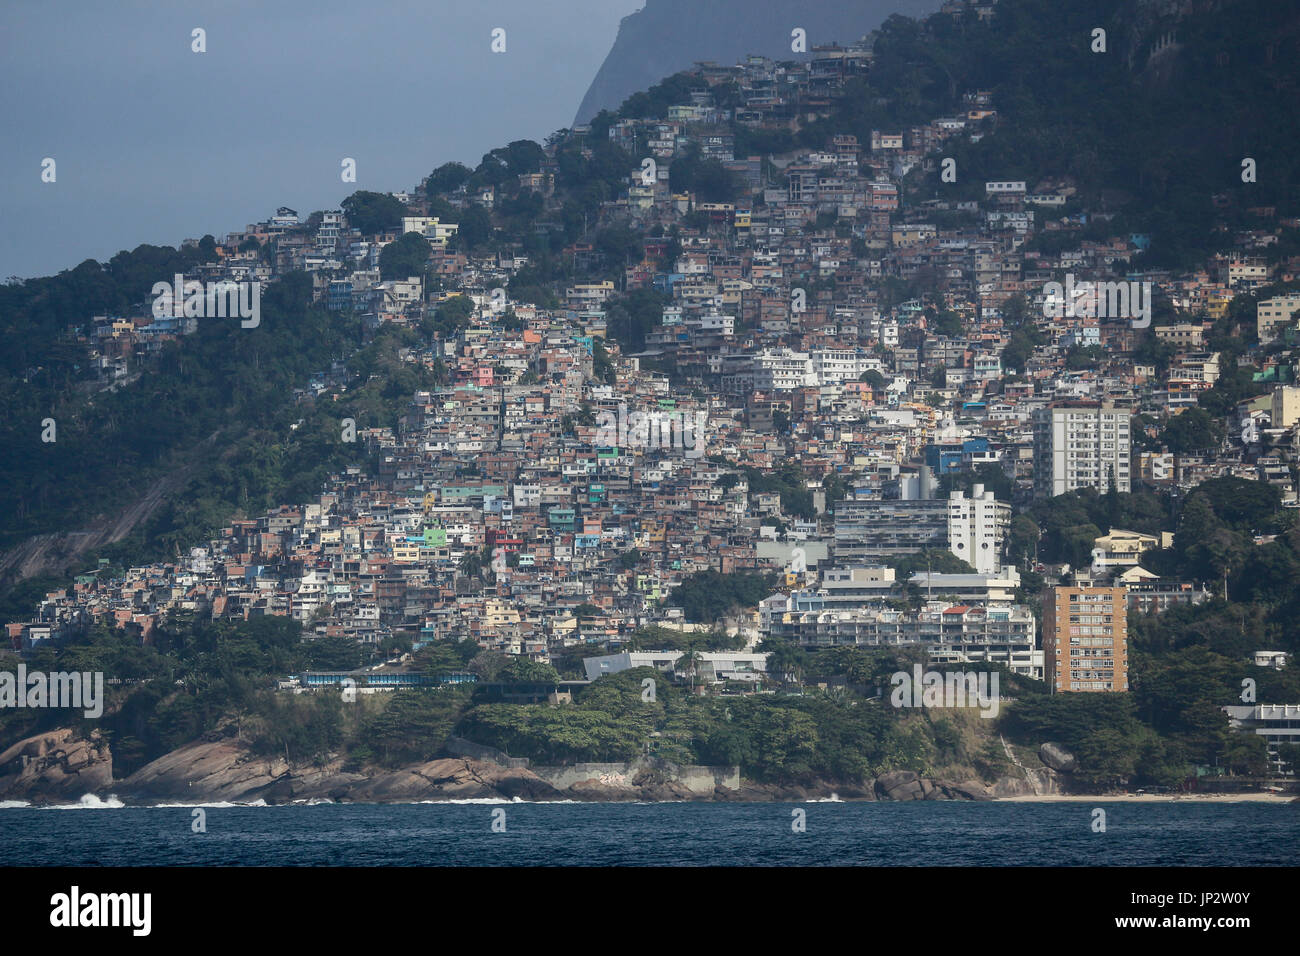 View of Vidigal Favela in Rio de Janeiro, located between Leblon and São Conrado, two of Rio de Janeiro's noblest neighborhoods. The Vidigal favela wa Stock Photo